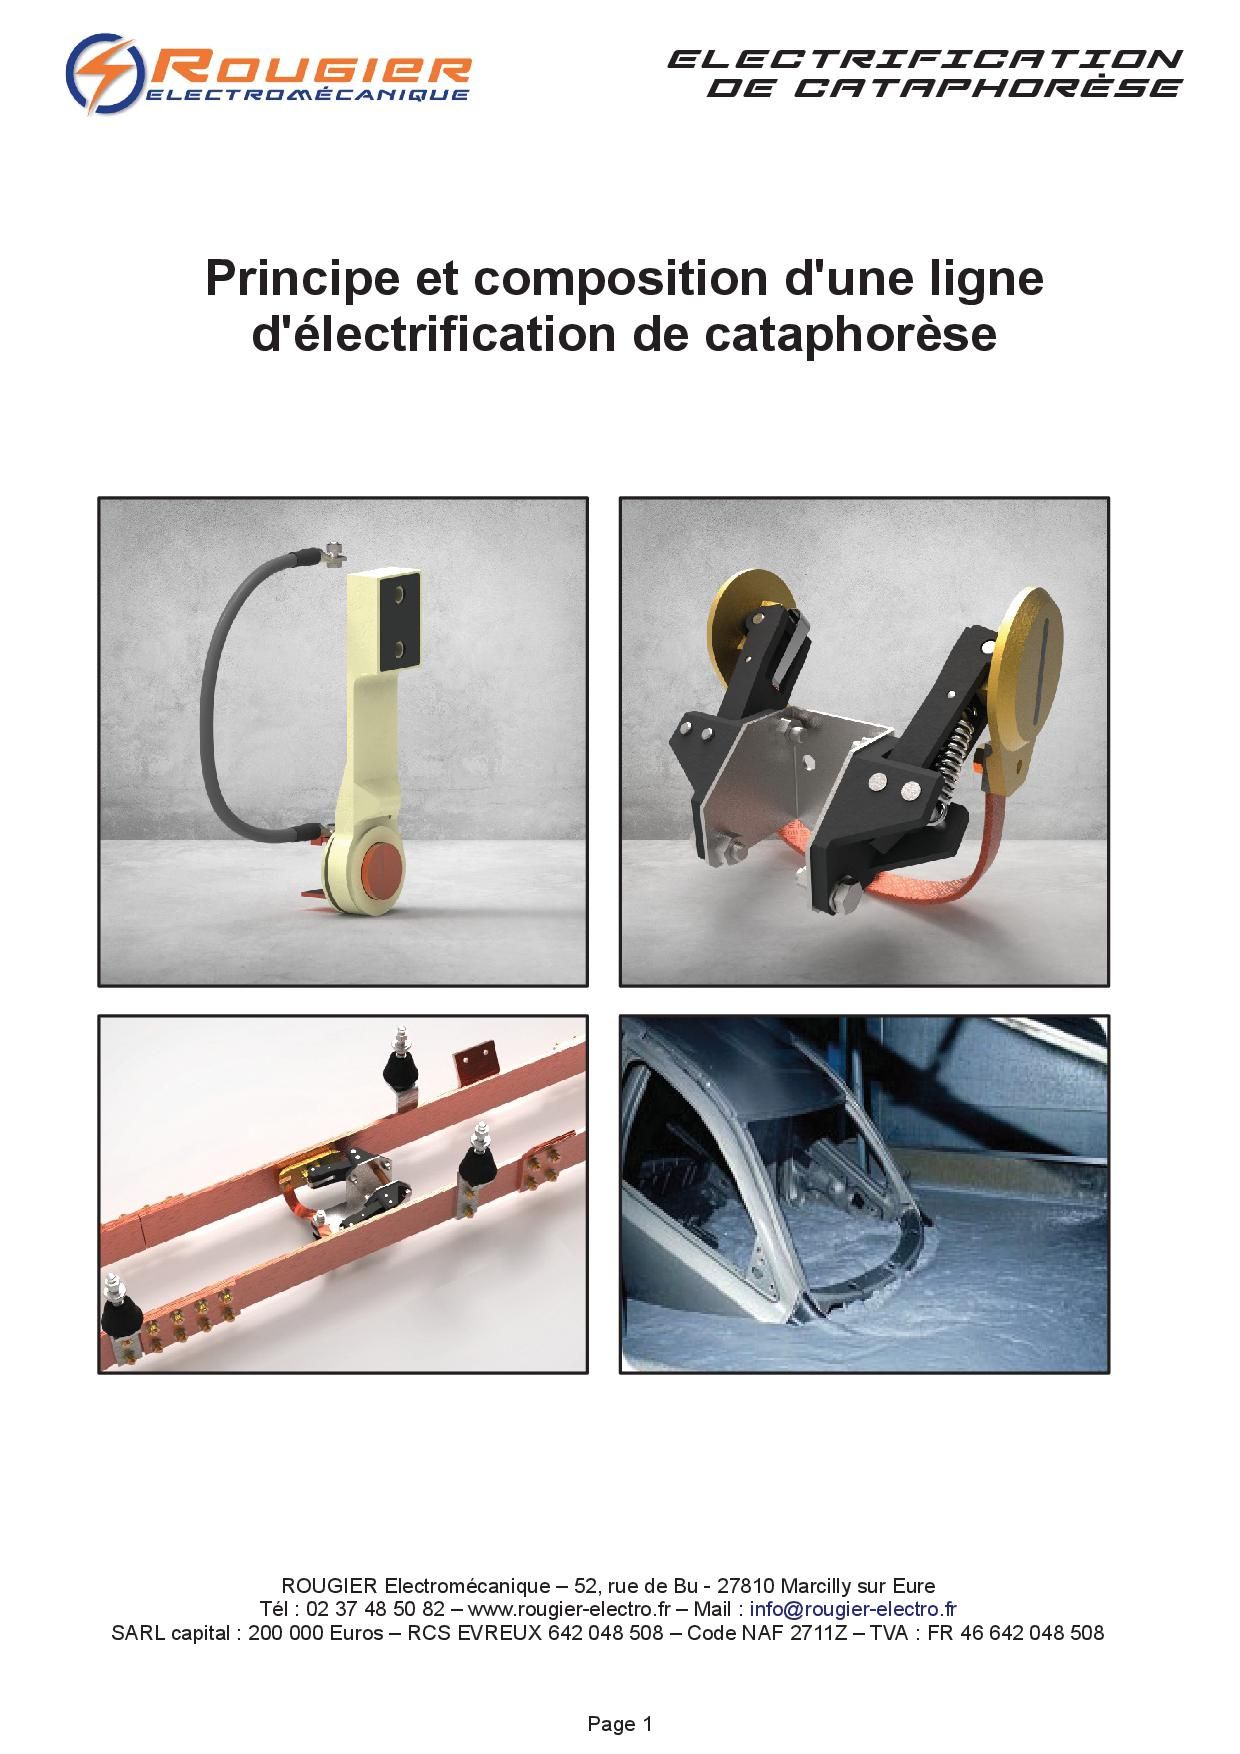 Principe et composition d'une ligne d'électrification de cataphorèse